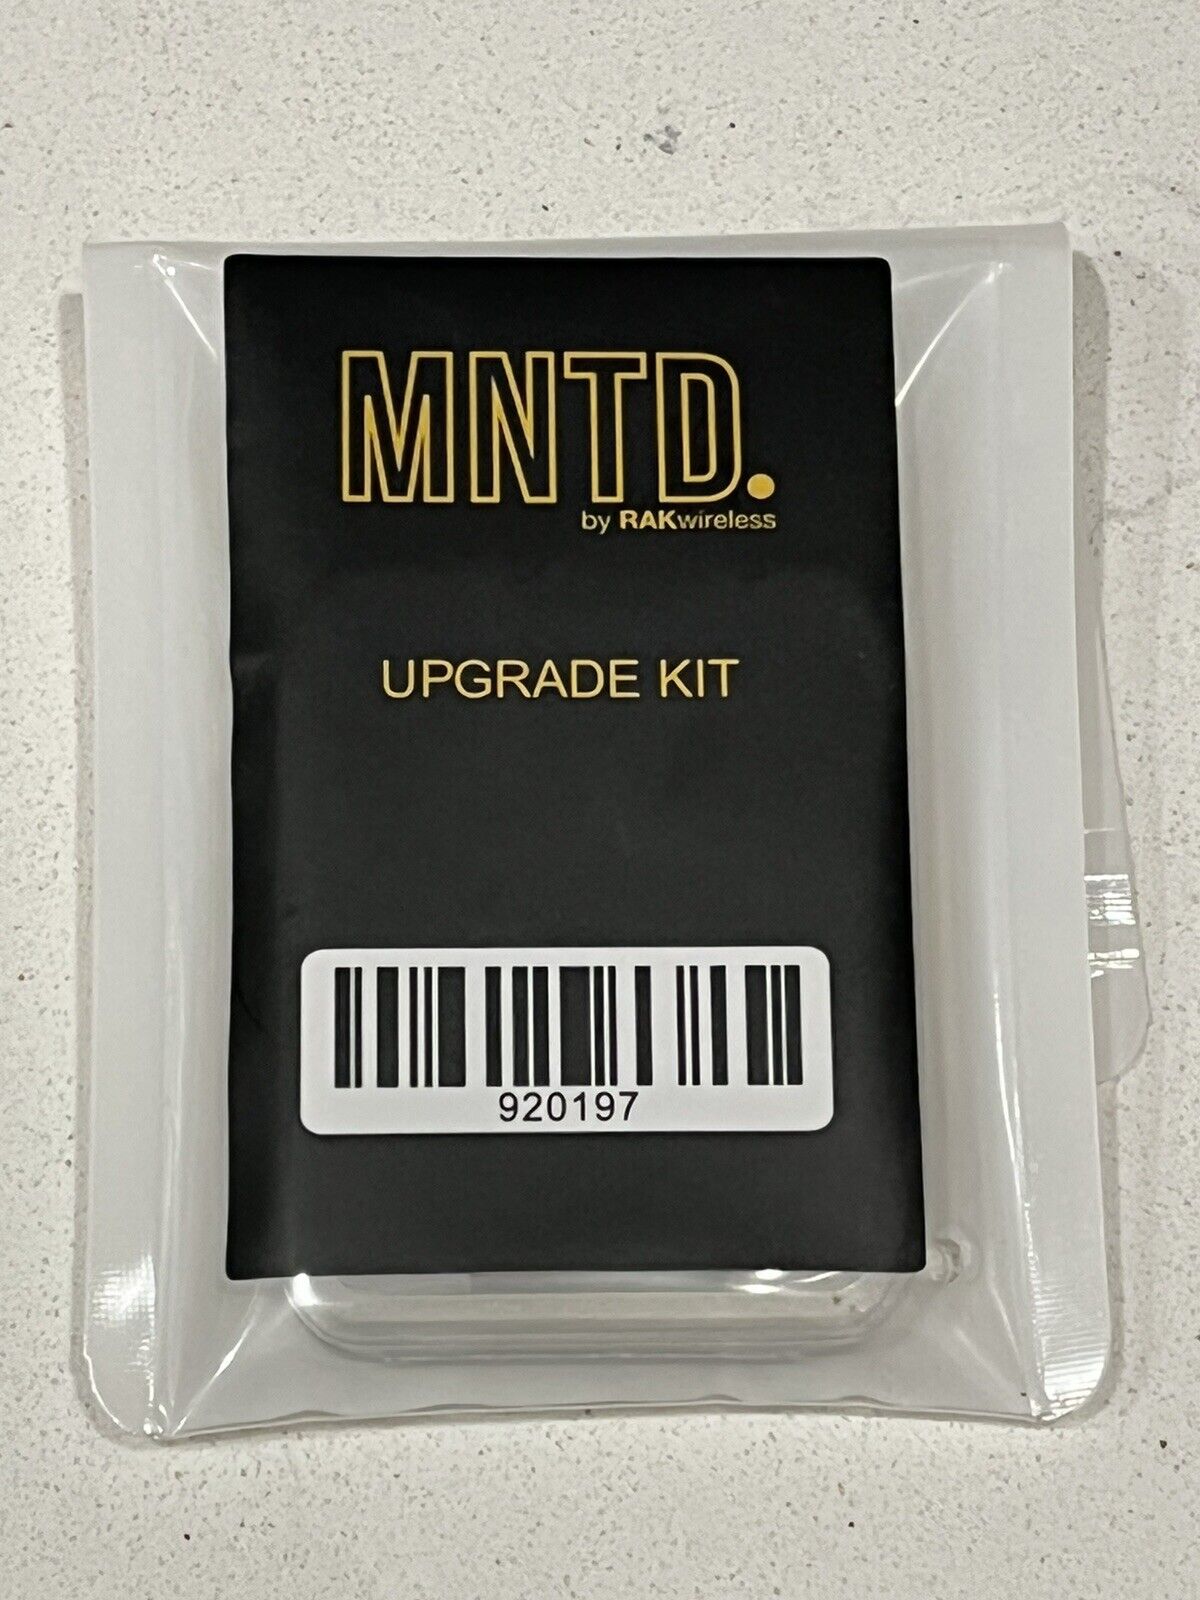 Kit de actualización de SD Wireless Mntd Rak Para Pargo Helio minero de puntos de conexión (US915)